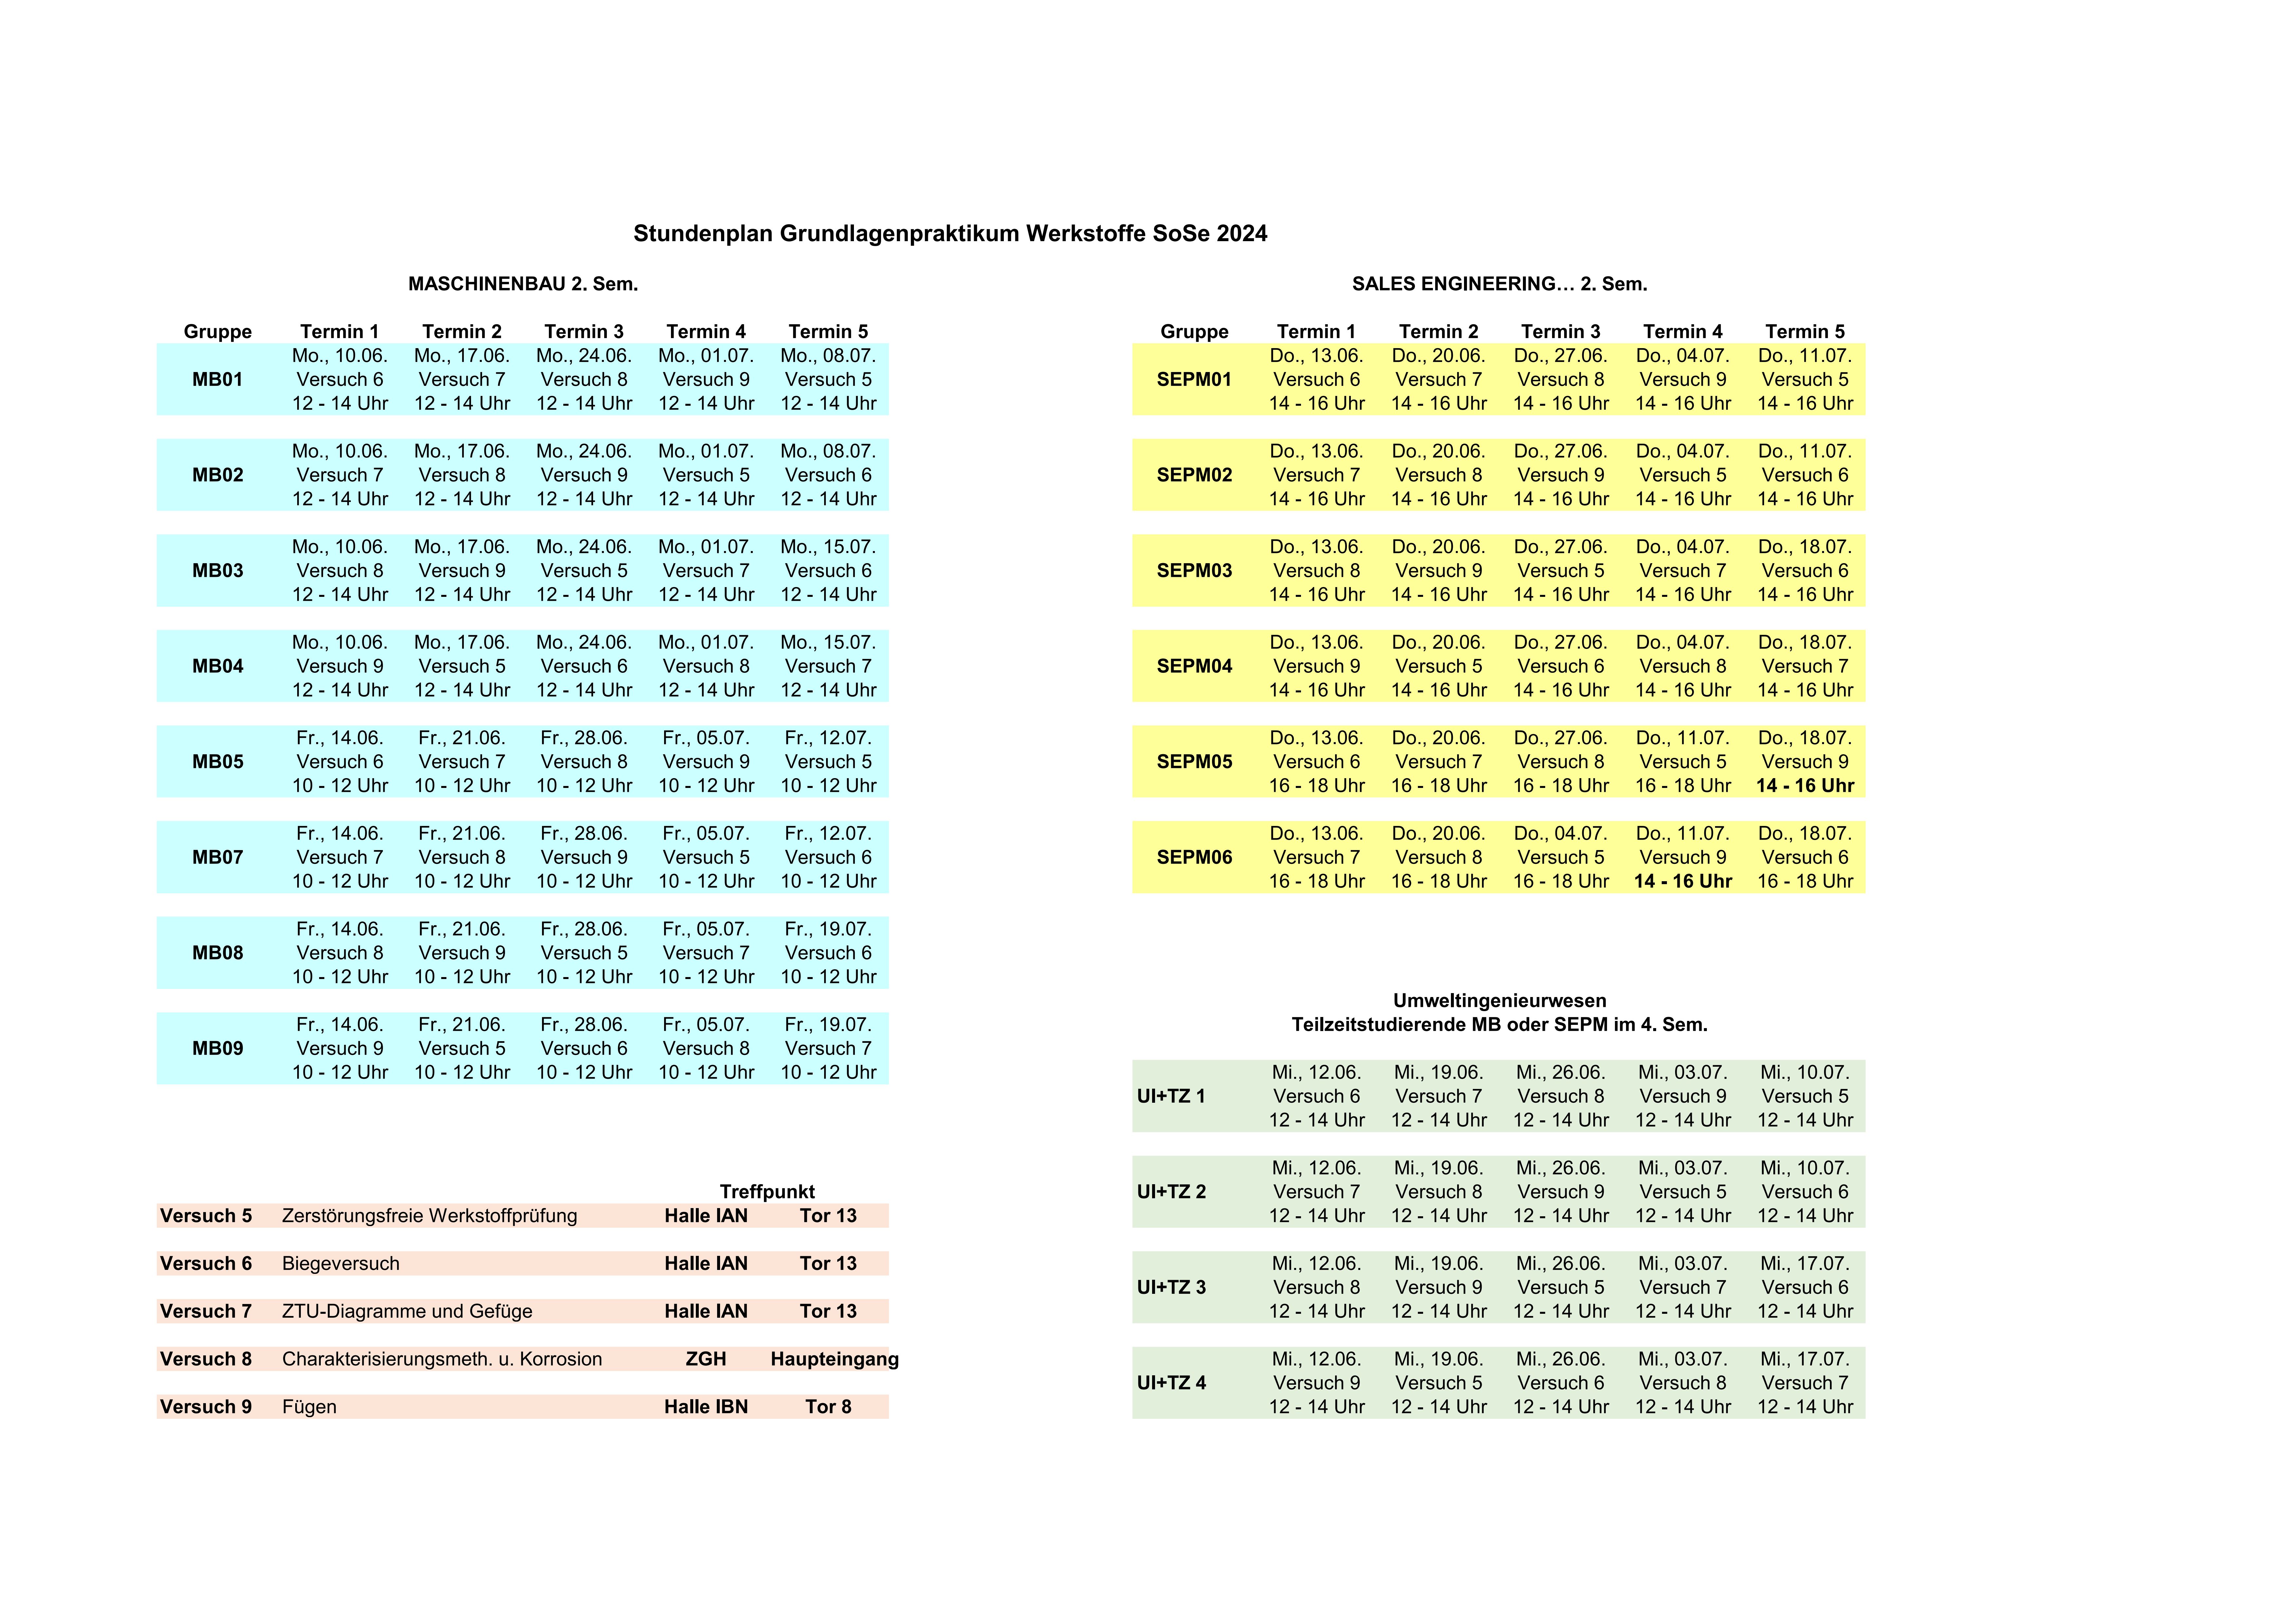 Stundenplan Werkstoffpraktikum SoSe 2024 für MB, SEPM, UI + TZ